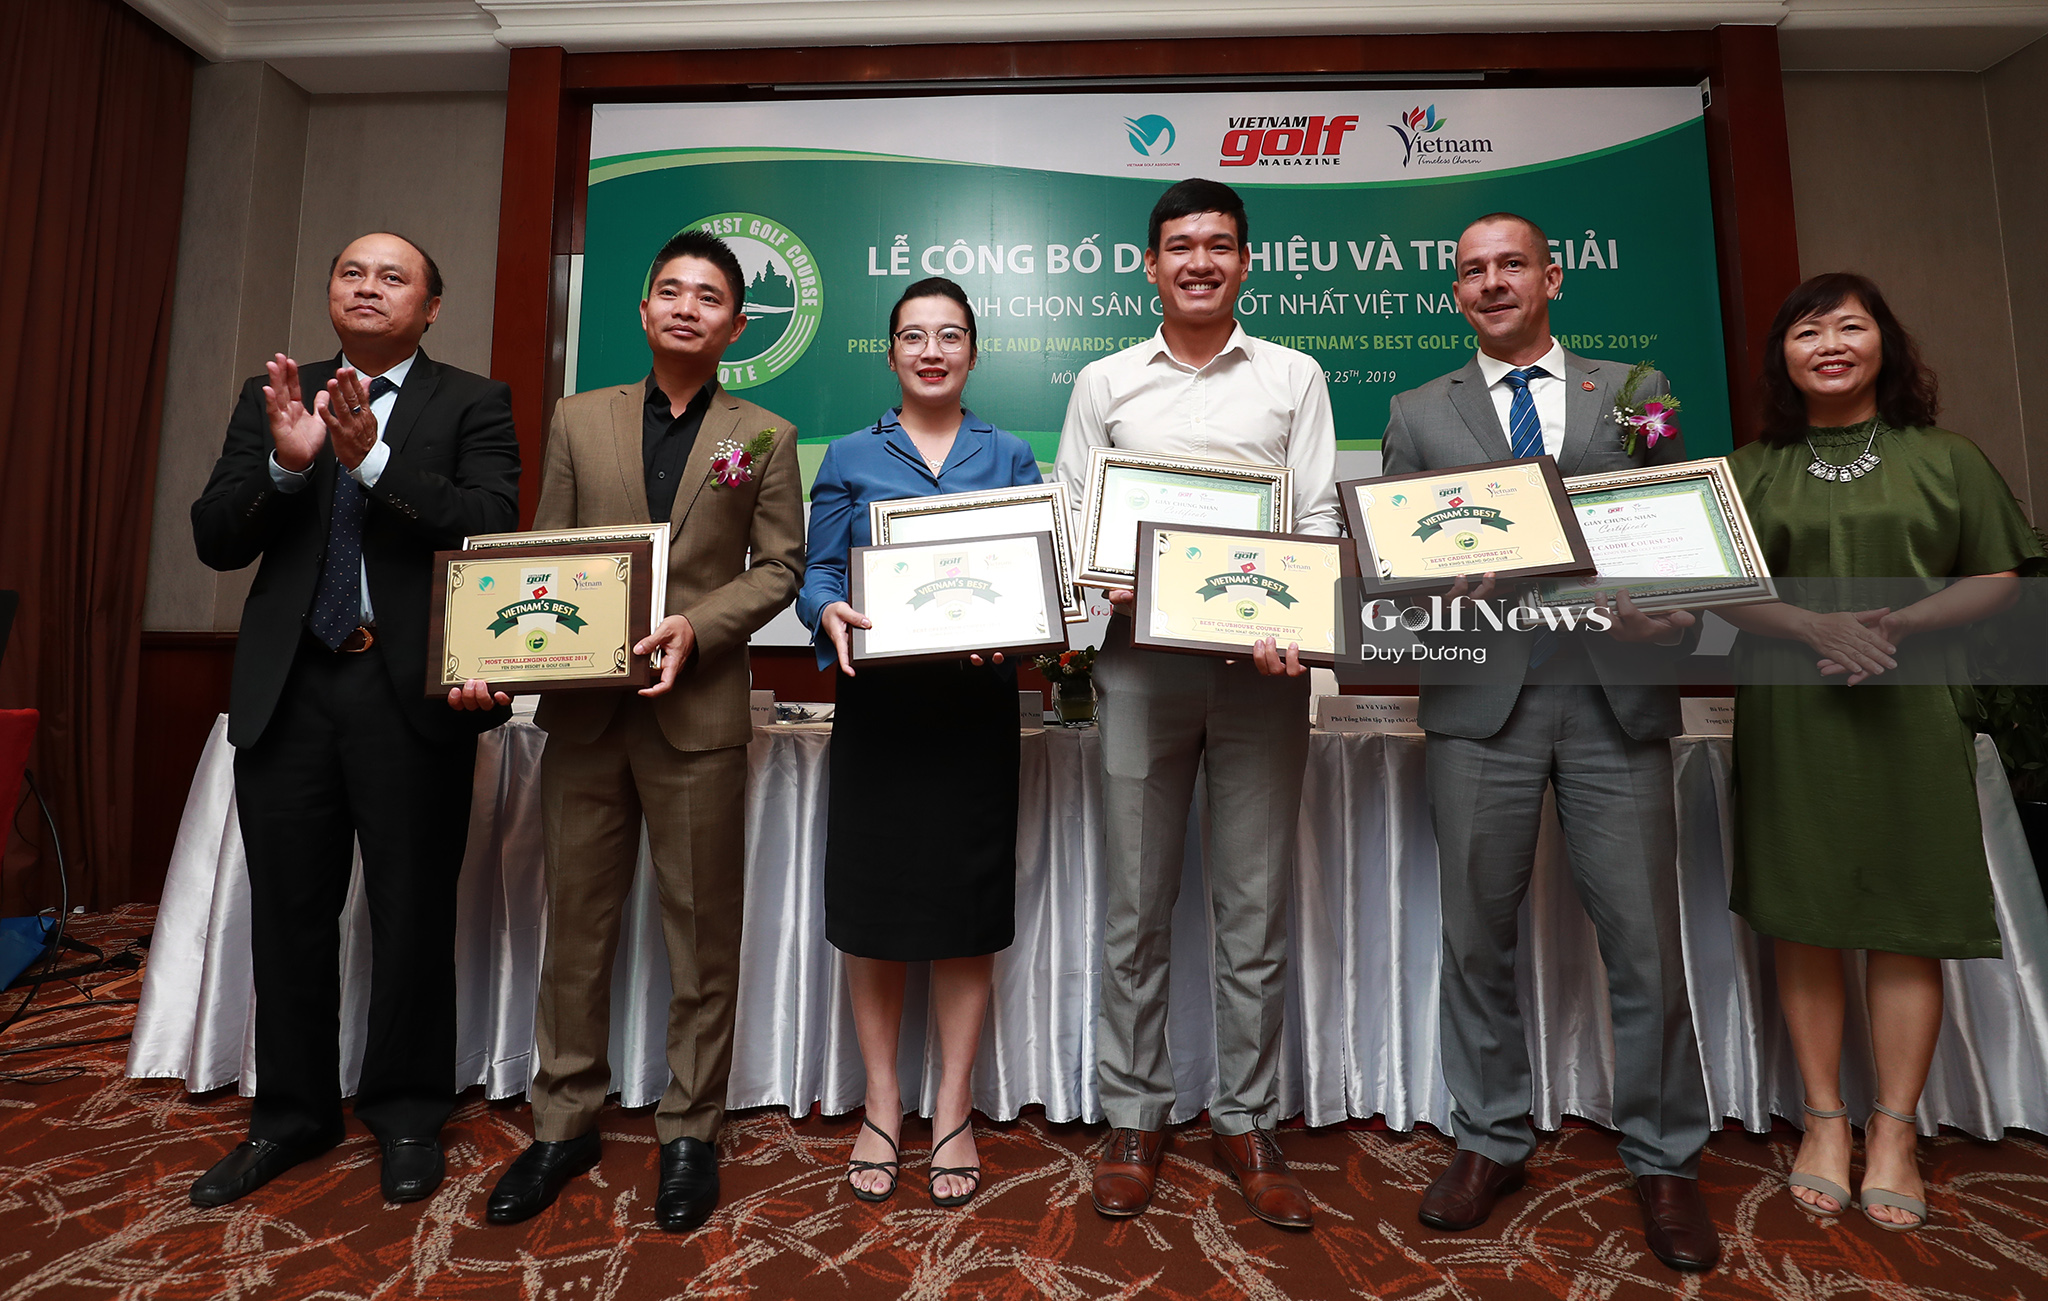 Sân golf Yên Dũng đạt danh hiệu “Sân golf thách thức nhất Việt Nam” tại sự kiện “Bình chọn sân golf tốt nhất Việt Nam 2019”